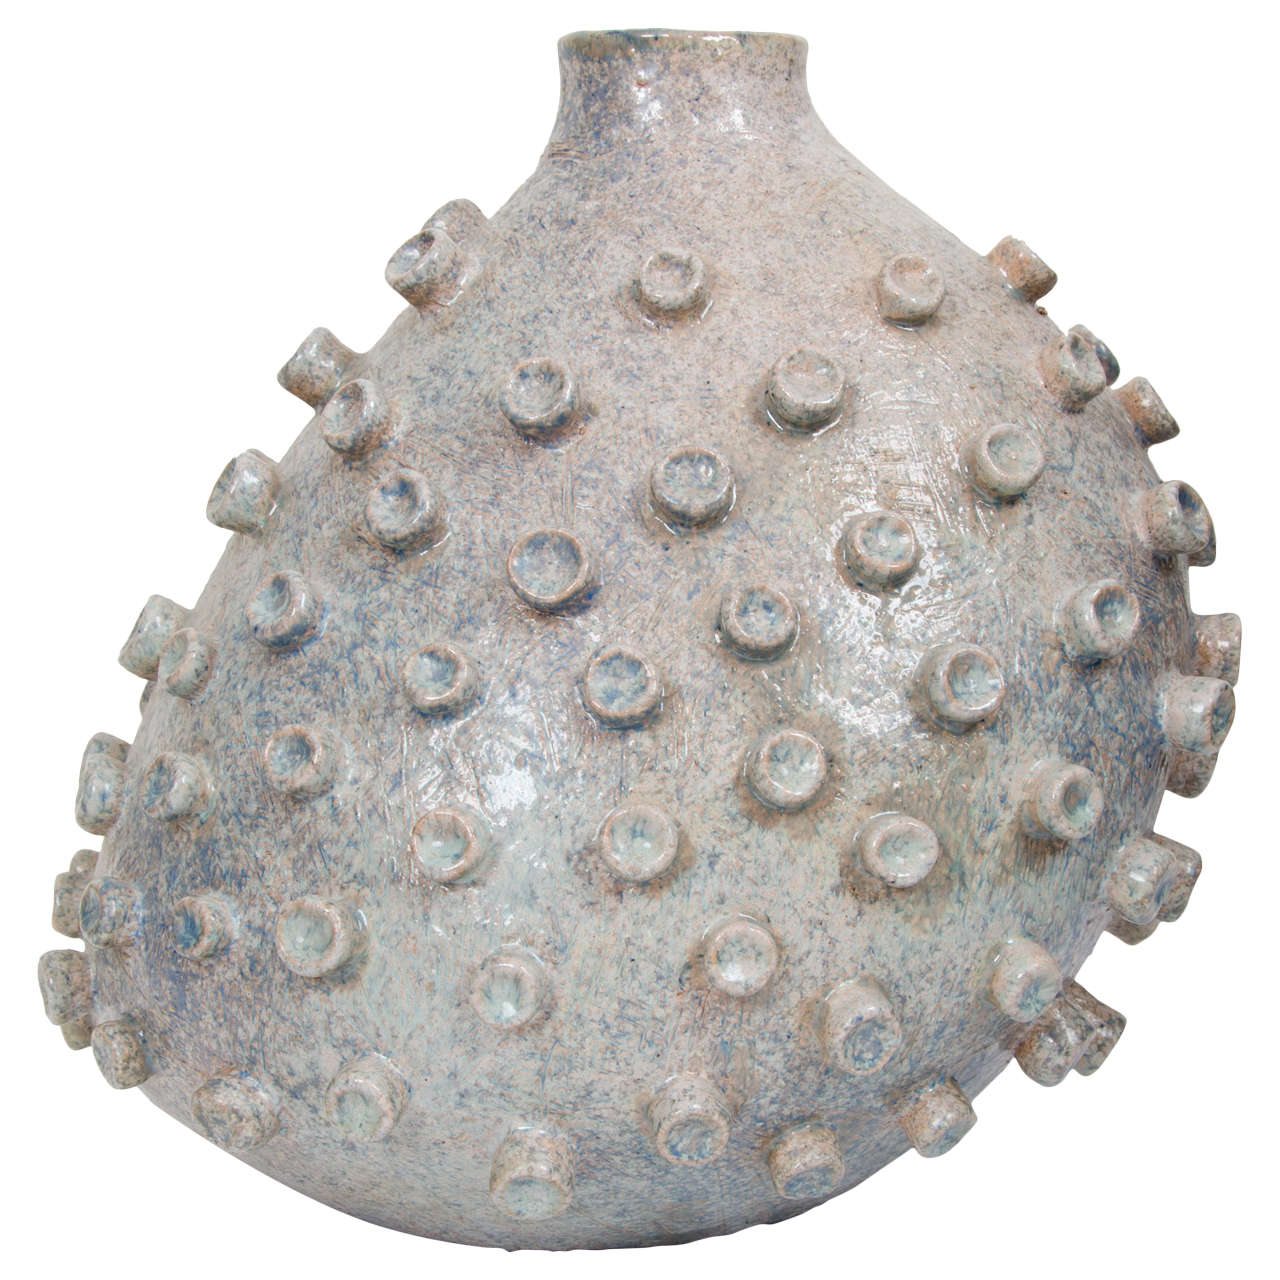 Biomorphic Ceramic Vessel